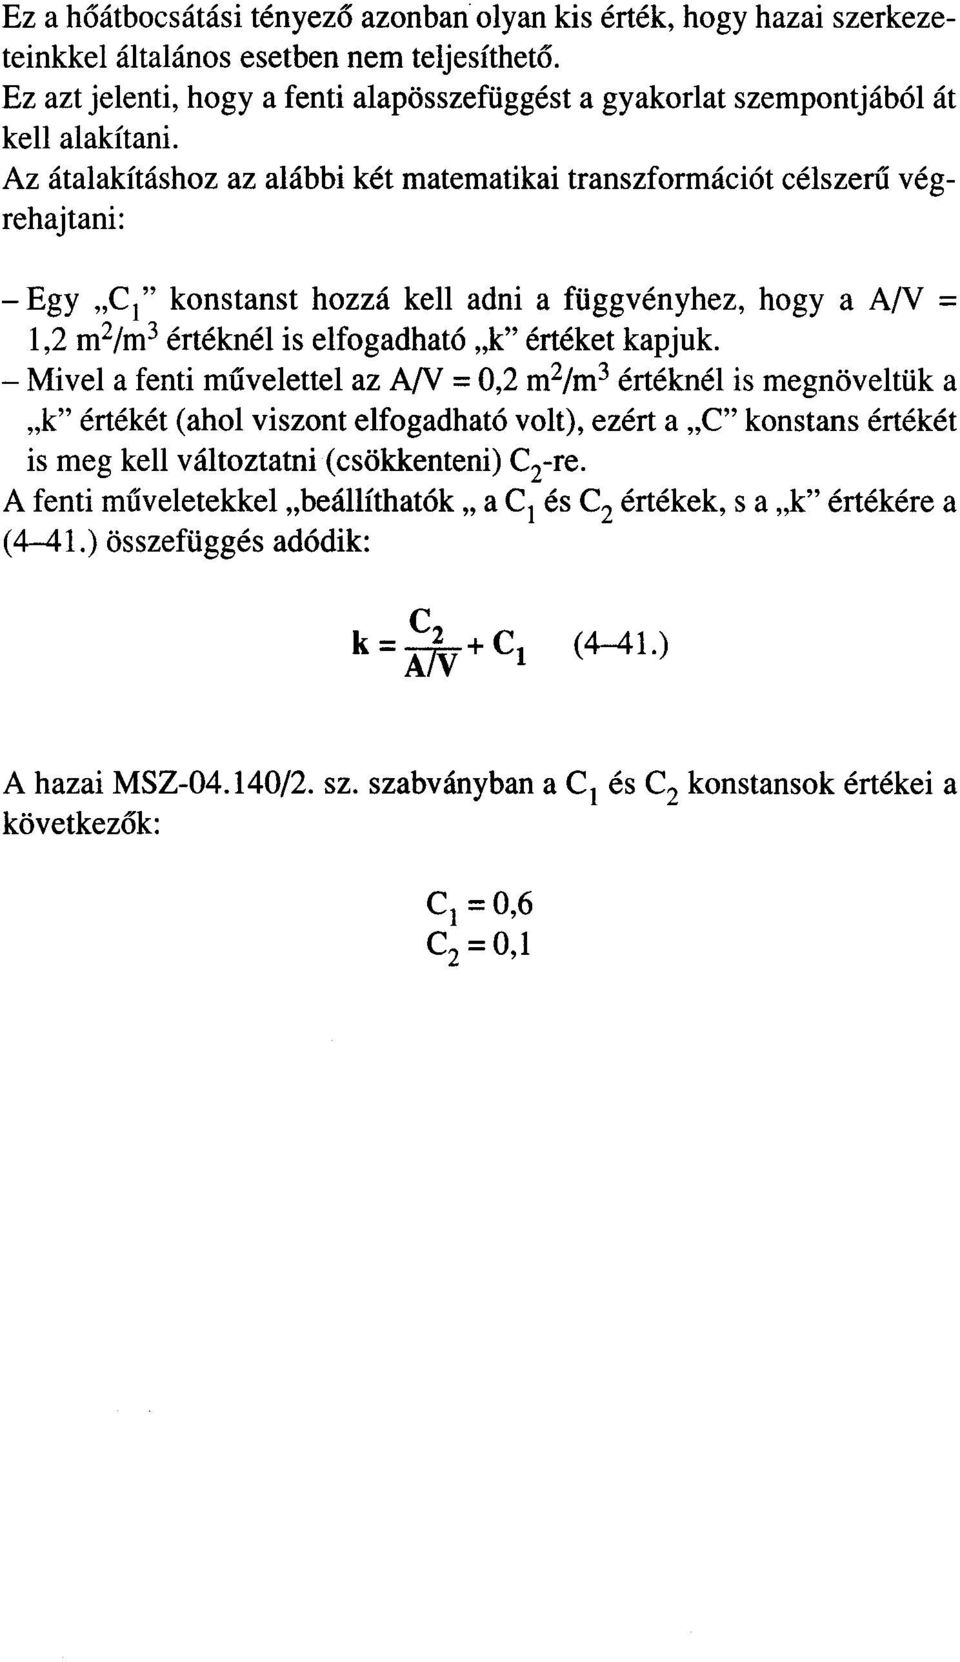 Az átalakításhoz az alábbi két matematikai transzformációt célszeru végrehajtani: - Egy "CI" konstanst hozzá kell adni a függvényhez, hogya A/V = 1,2 mz/m3 értéknél is elfogadható "k" értéket